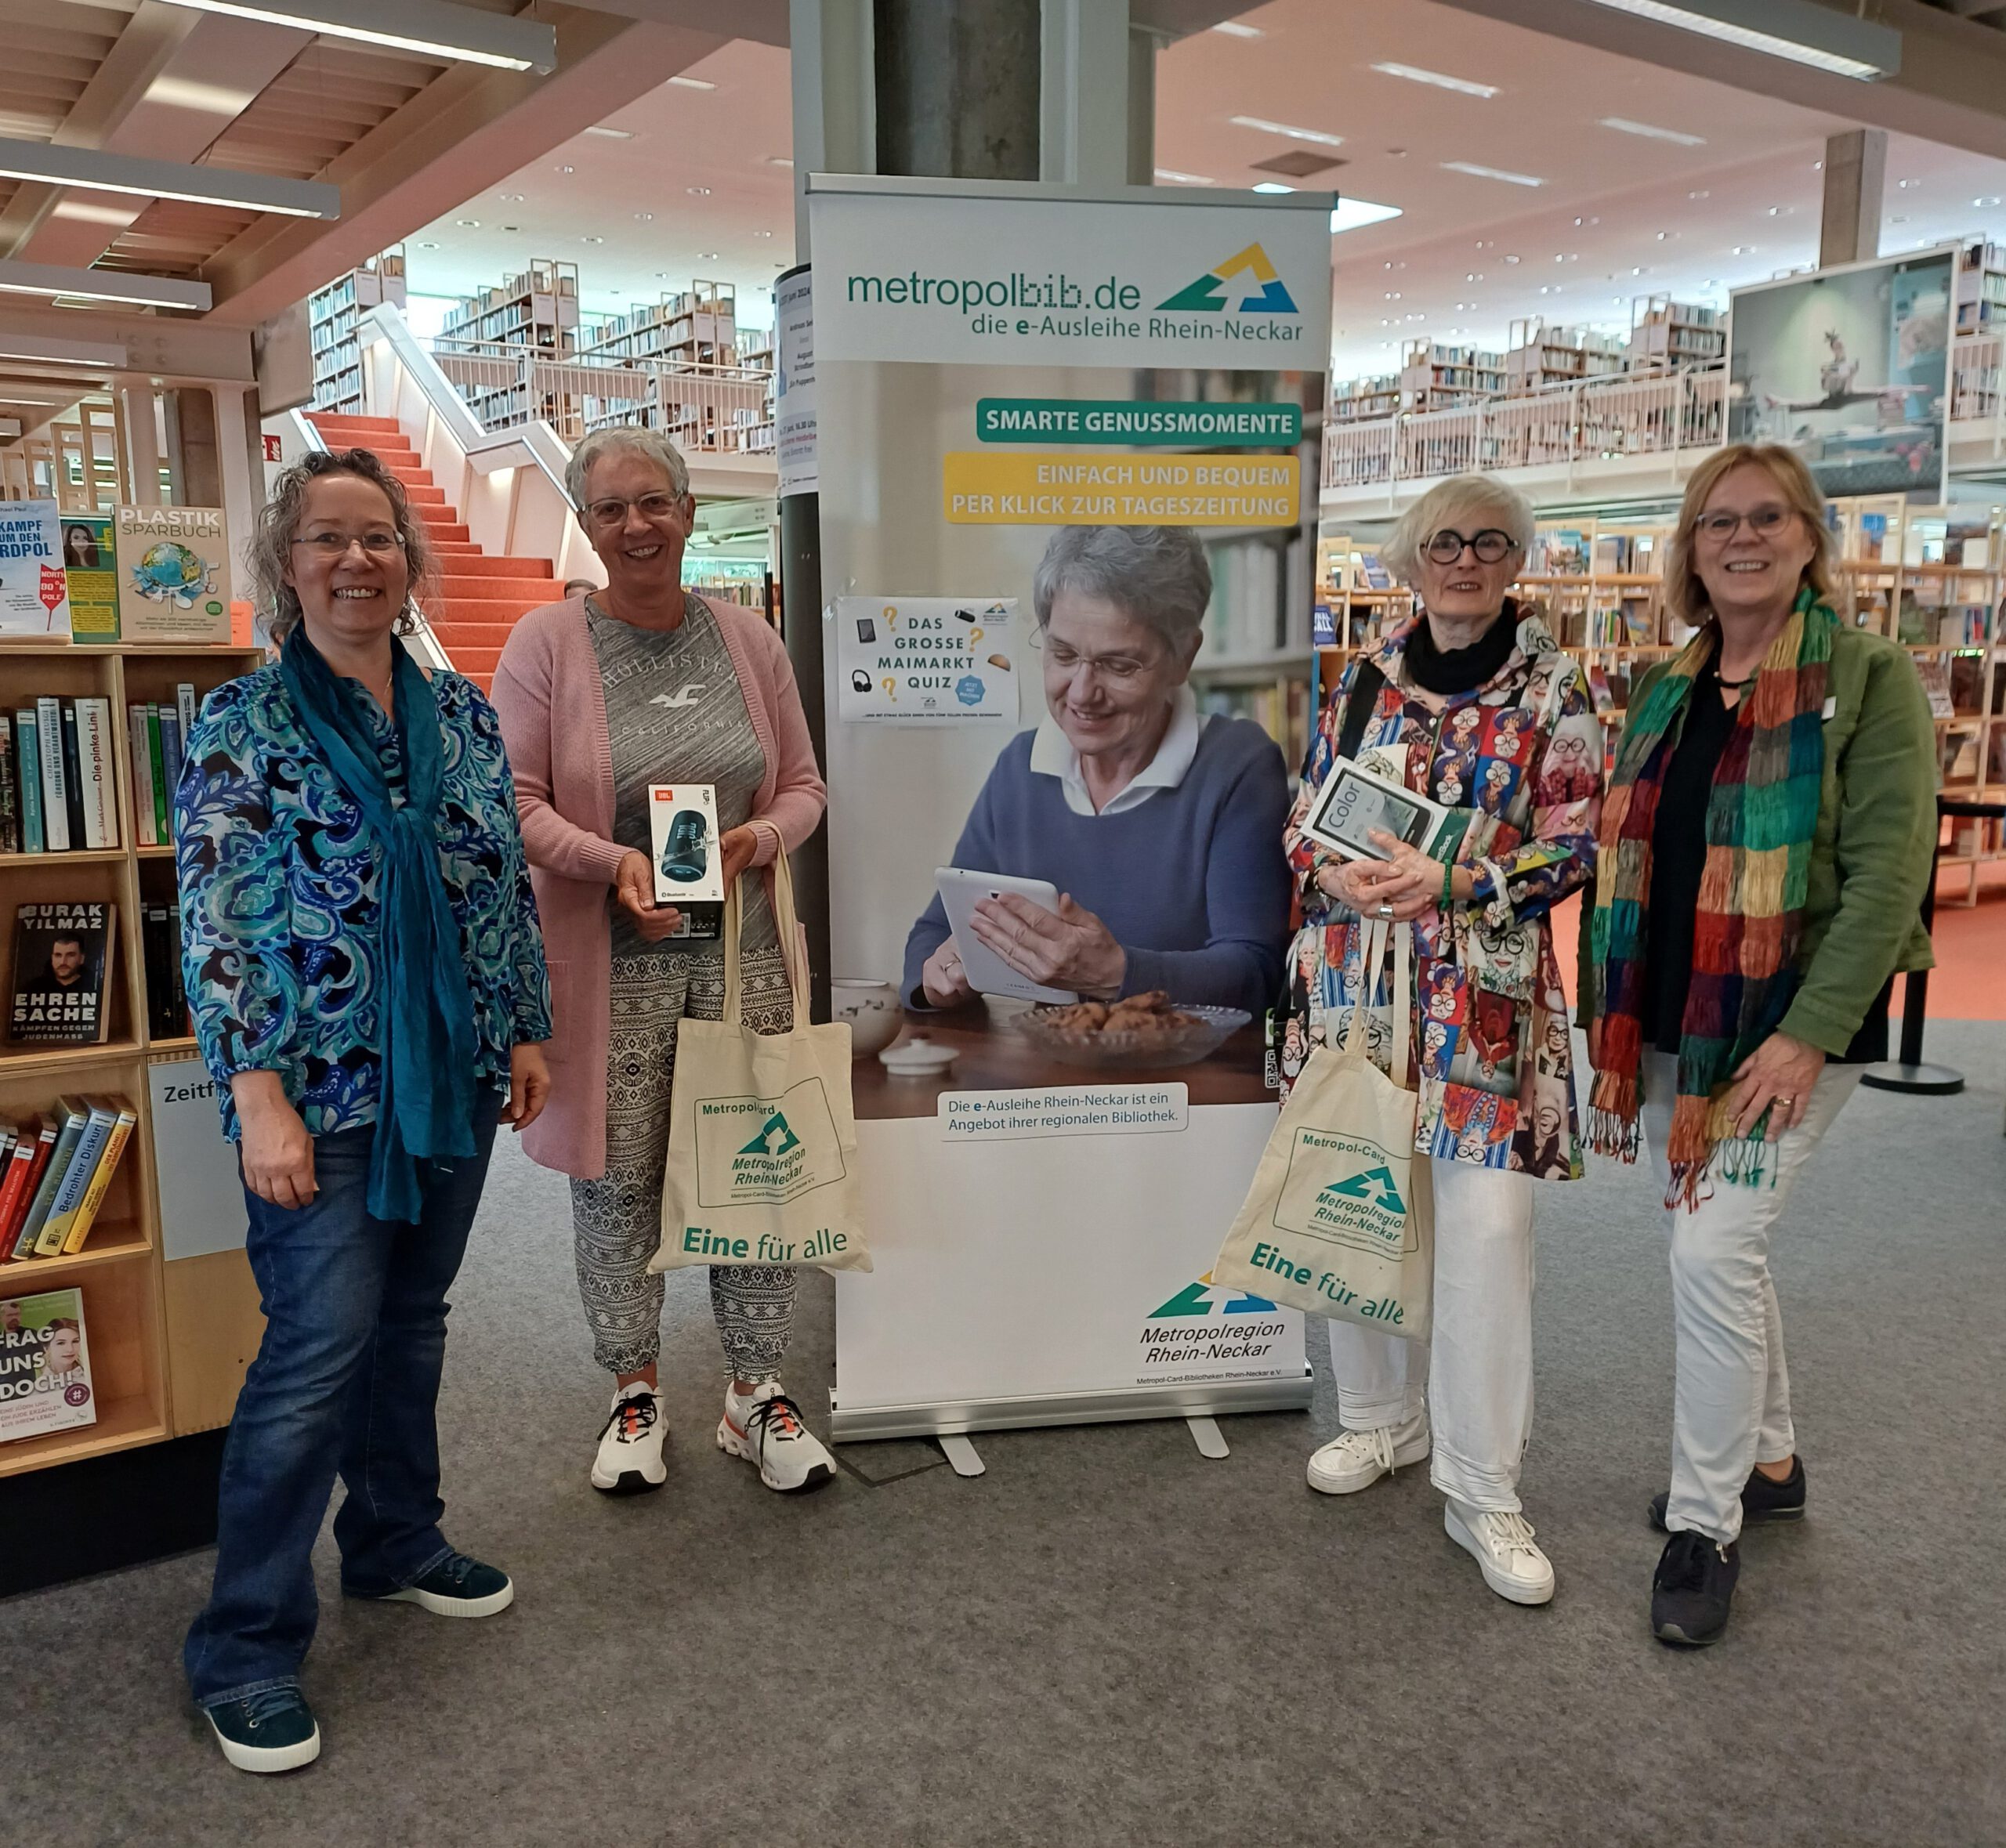 Gruppenfoto in der Stadtbücherei Heidelberg Übergabe der Preise 1 und 2 an die Maimarkt-Verlosungsgewinnerinnen